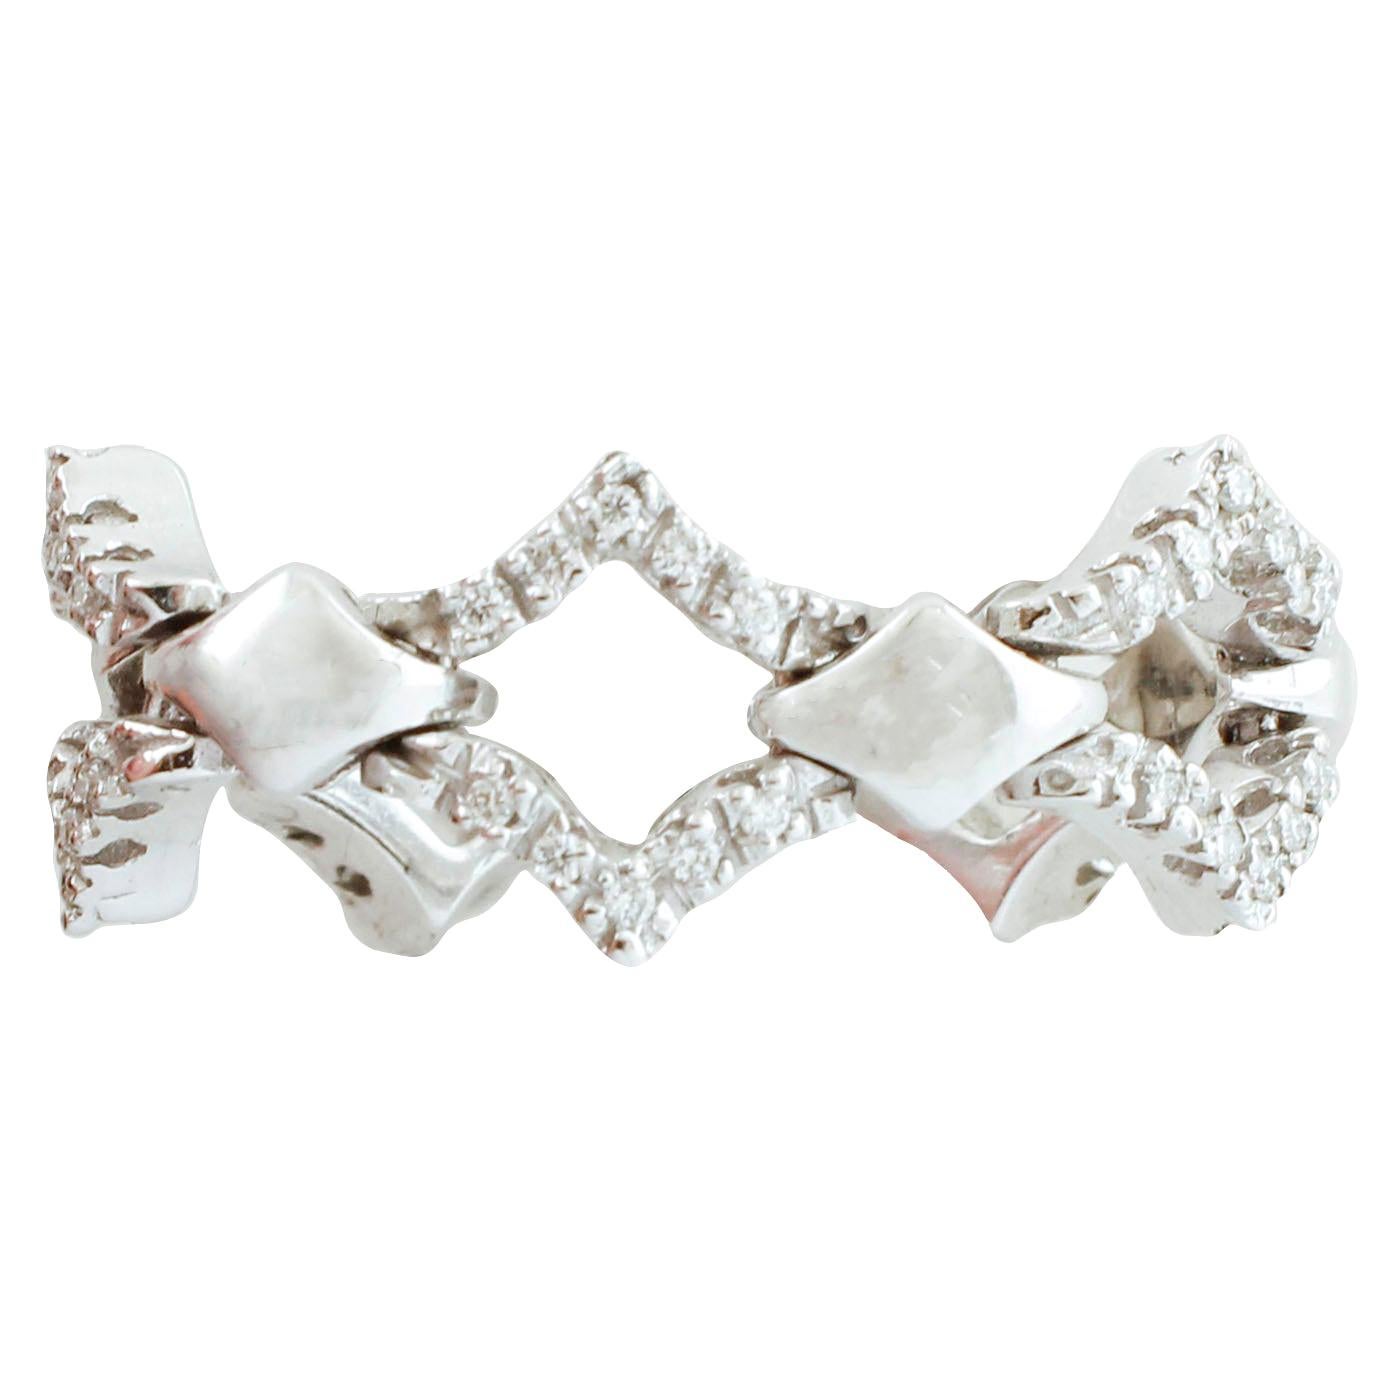 Little White Diamonds, 18 Karat White Gold Fashion Style Ring